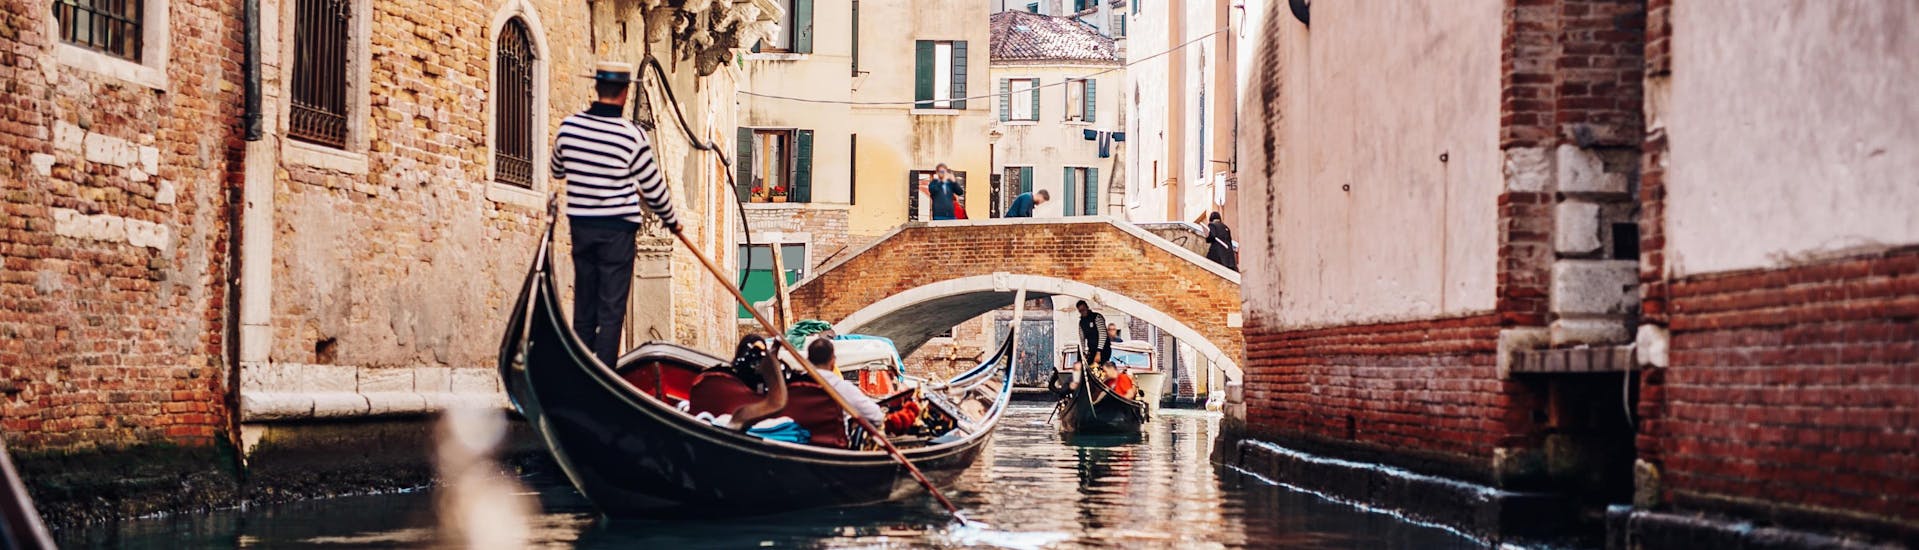 Ein Gondoliere paddelt bei einer Gondelfahrt in Venedig durch einen engen Kanal.